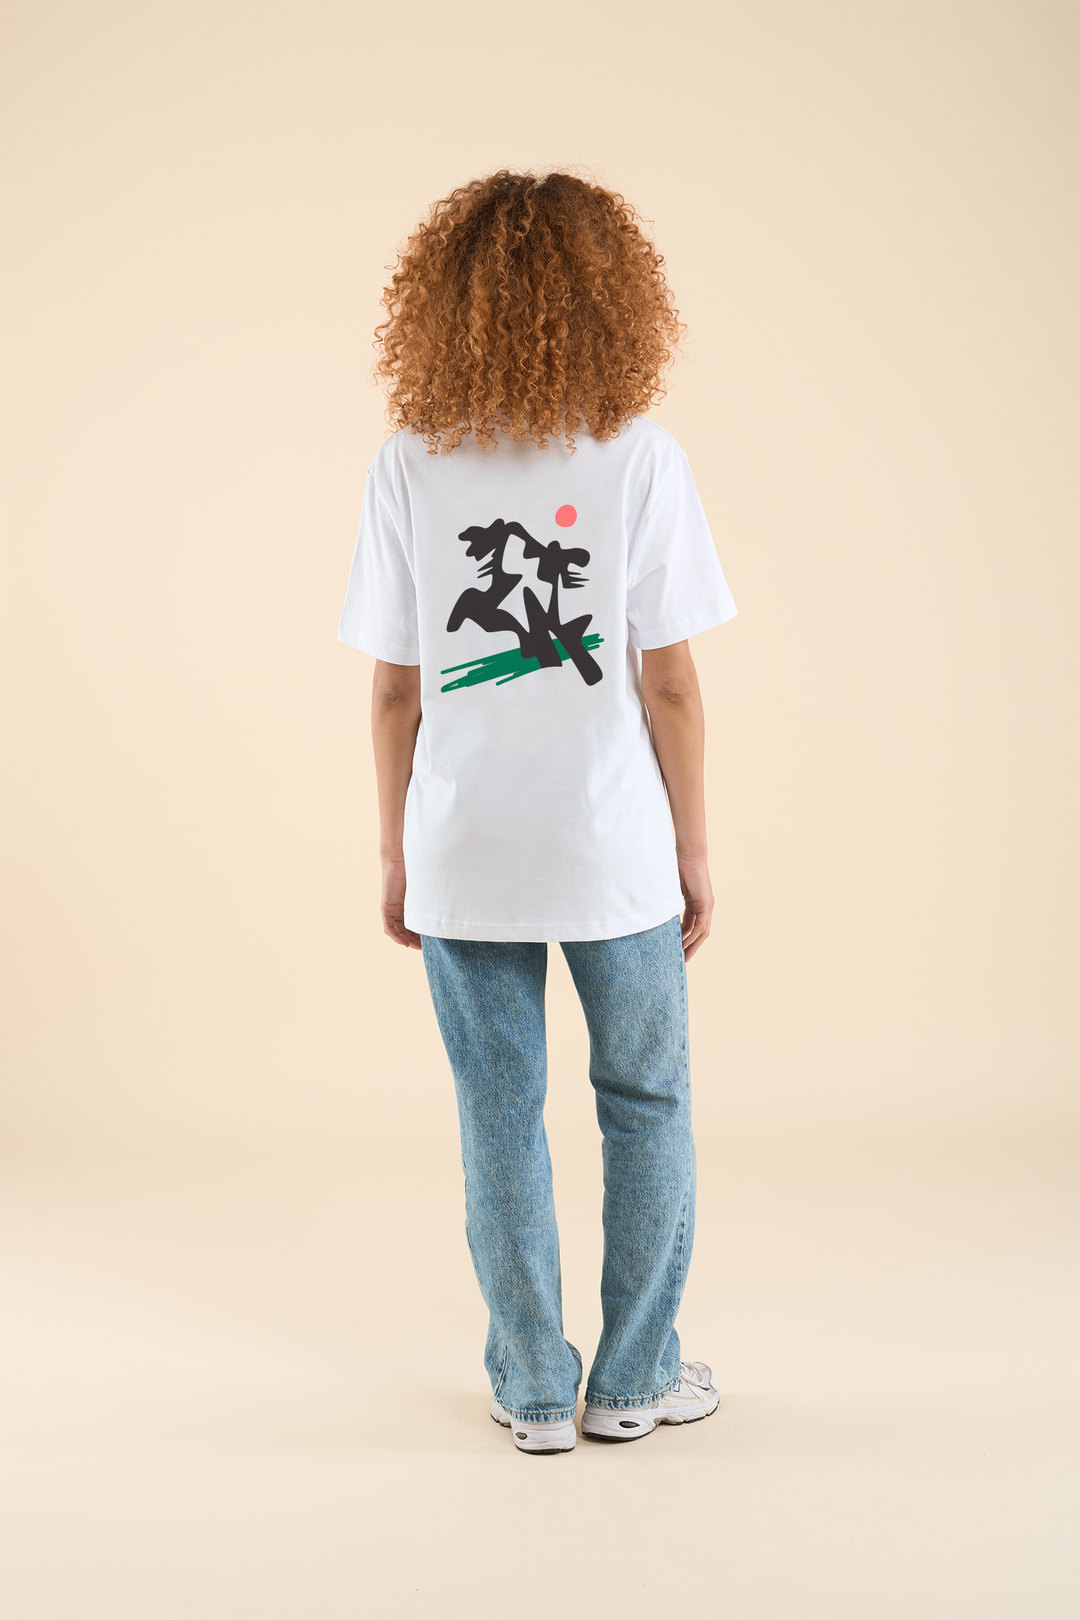 AMOURS MIGRATEURS・T-shirt unisexe・Blanc